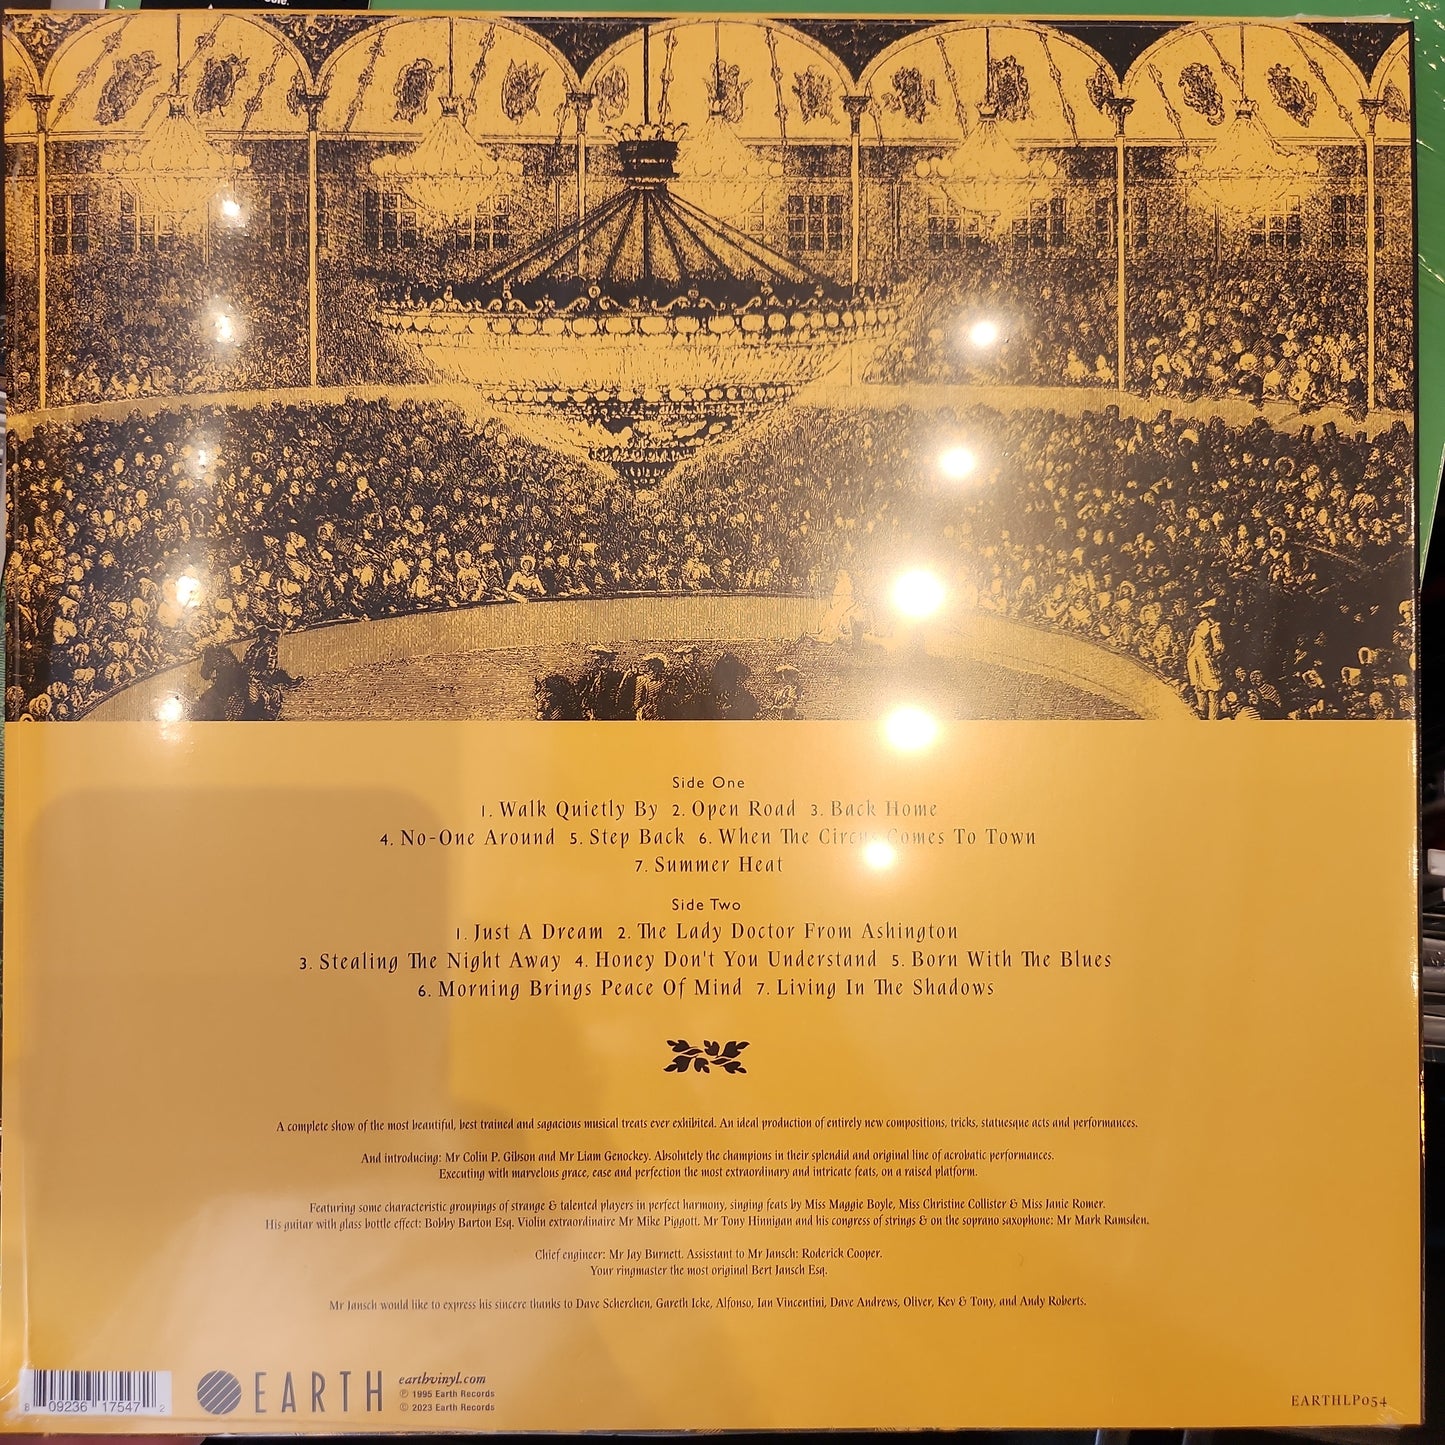 Bert Jansch - When the Circus comes to Town -RSD Vinyl LP